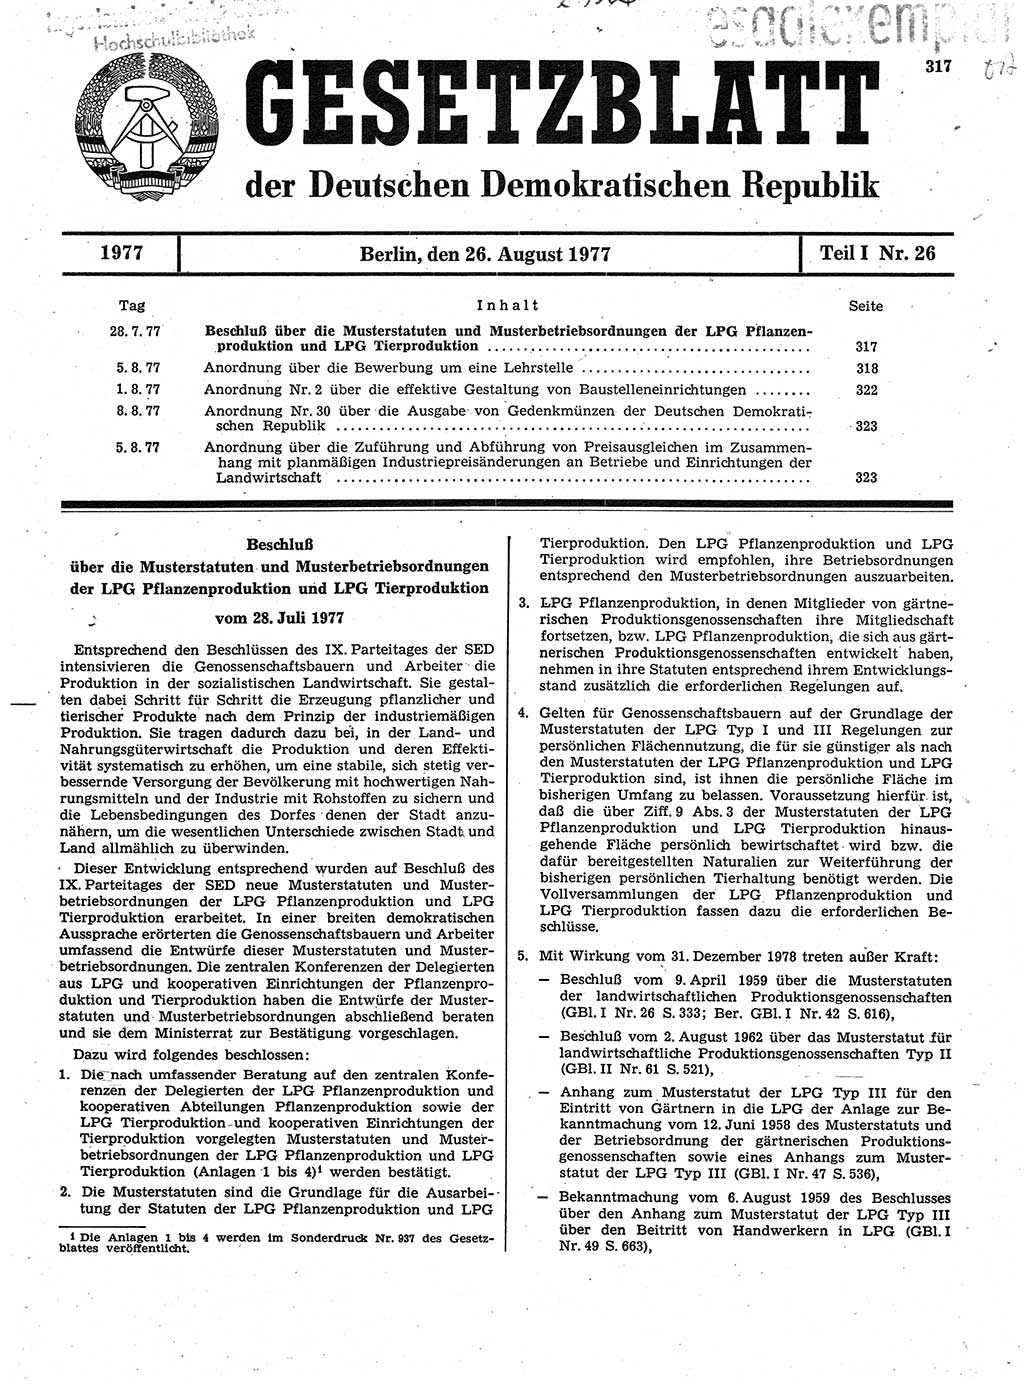 Gesetzblatt (GBl.) der Deutschen Demokratischen Republik (DDR) Teil Ⅰ 1977, Seite 317 (GBl. DDR Ⅰ 1977, S. 317)